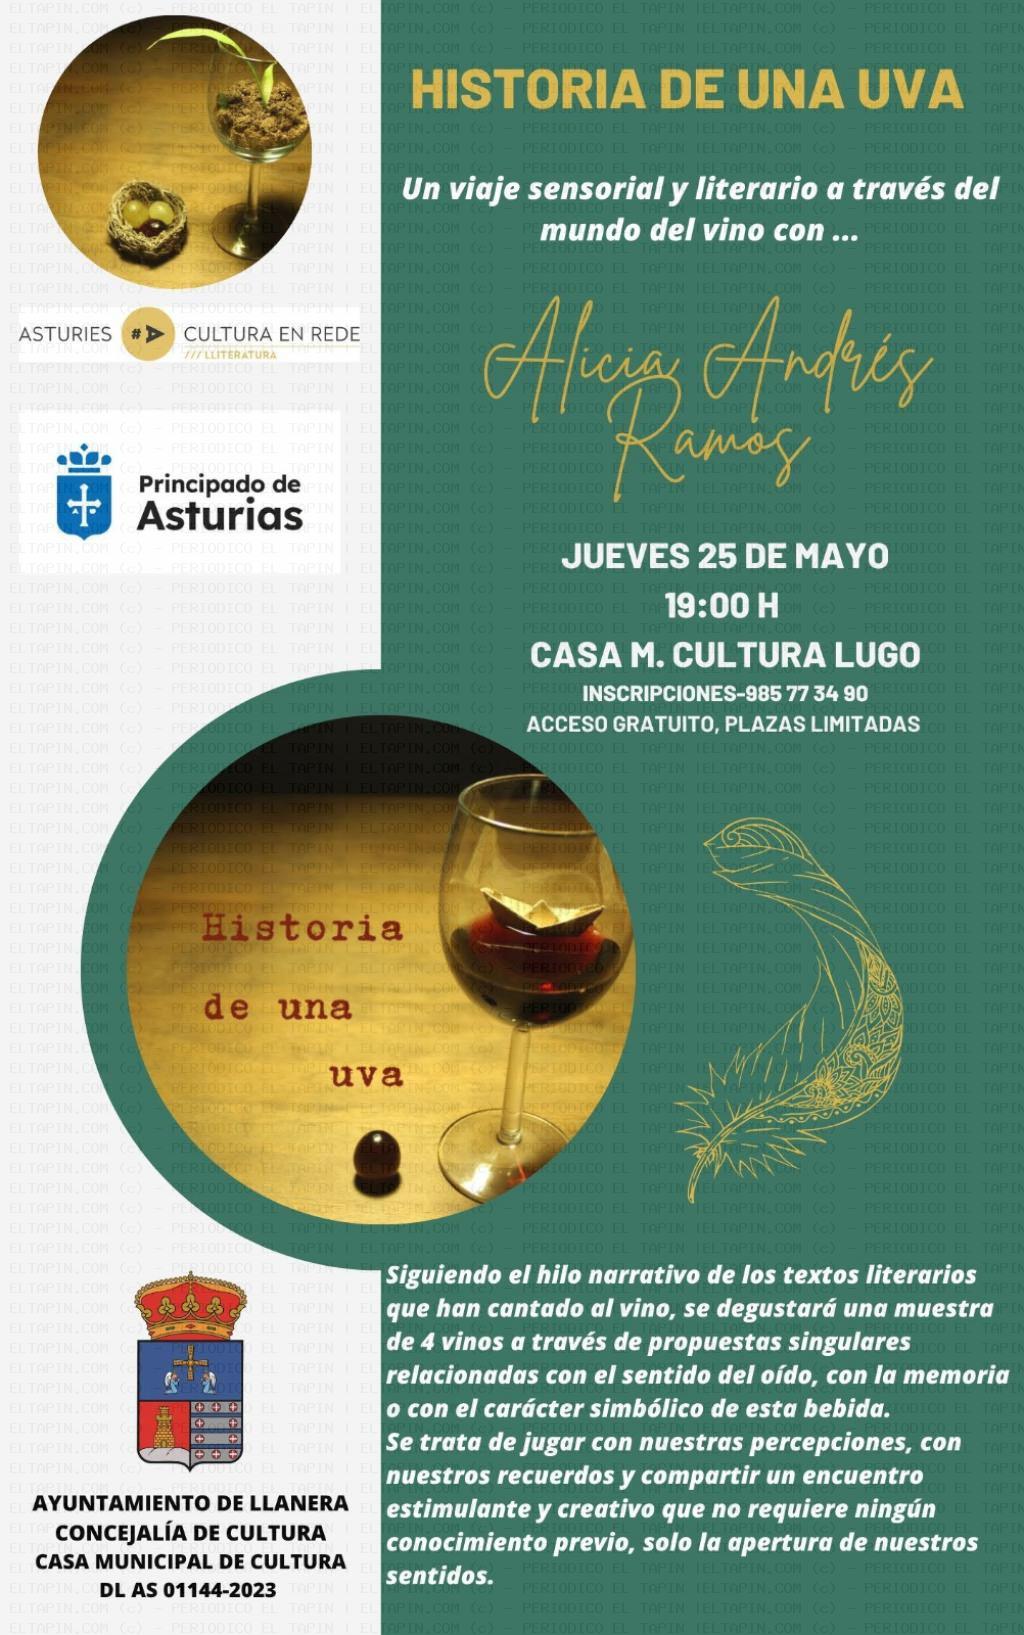 El Tapin - La Casa de Cultura de Lugo acoge “Historia de una uva”, un viaje sensorial y literario a través del mundo del vino